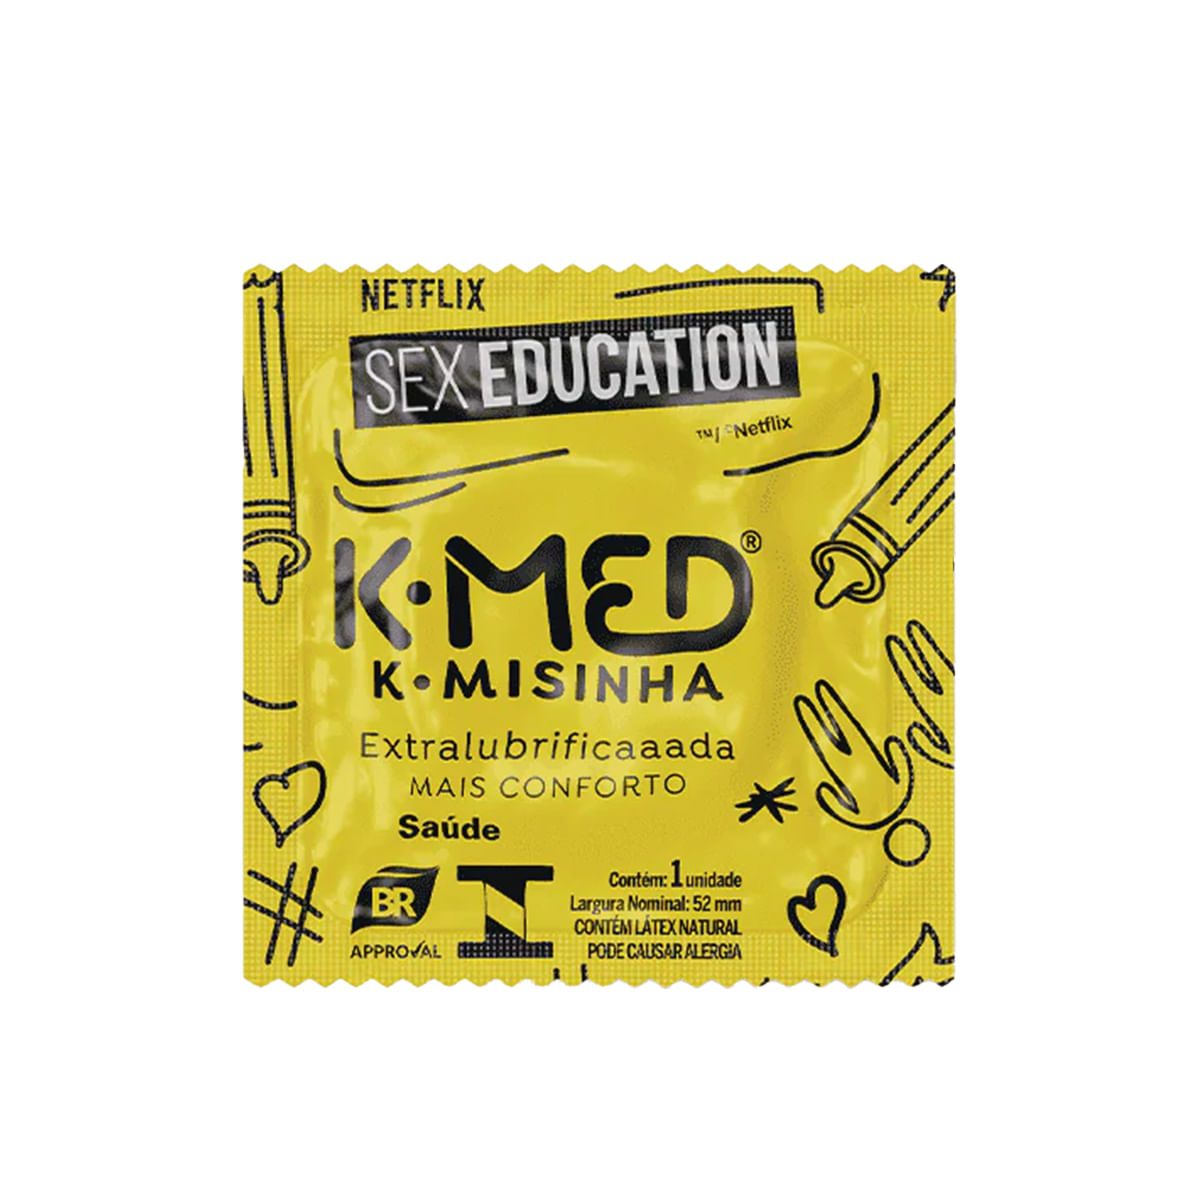 Preservativos K-Misinha Tradicional Sex Education com 8 Unidades Cimed